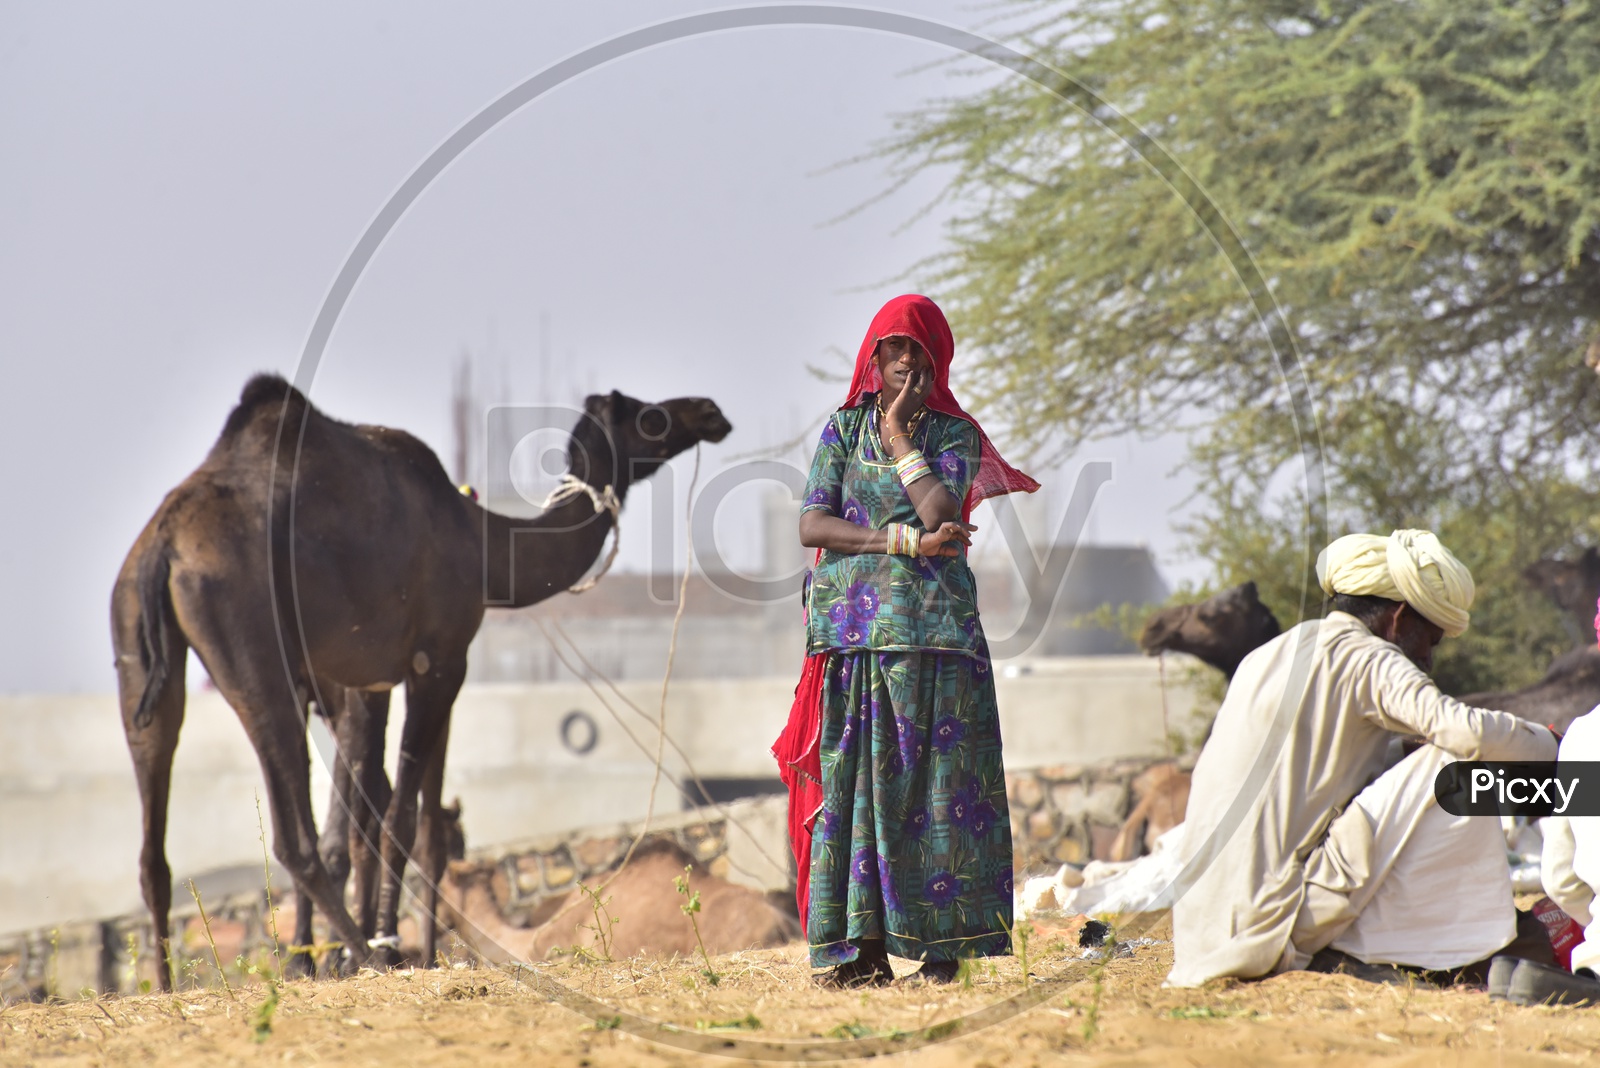 Woman at Pushkar Camel Fair